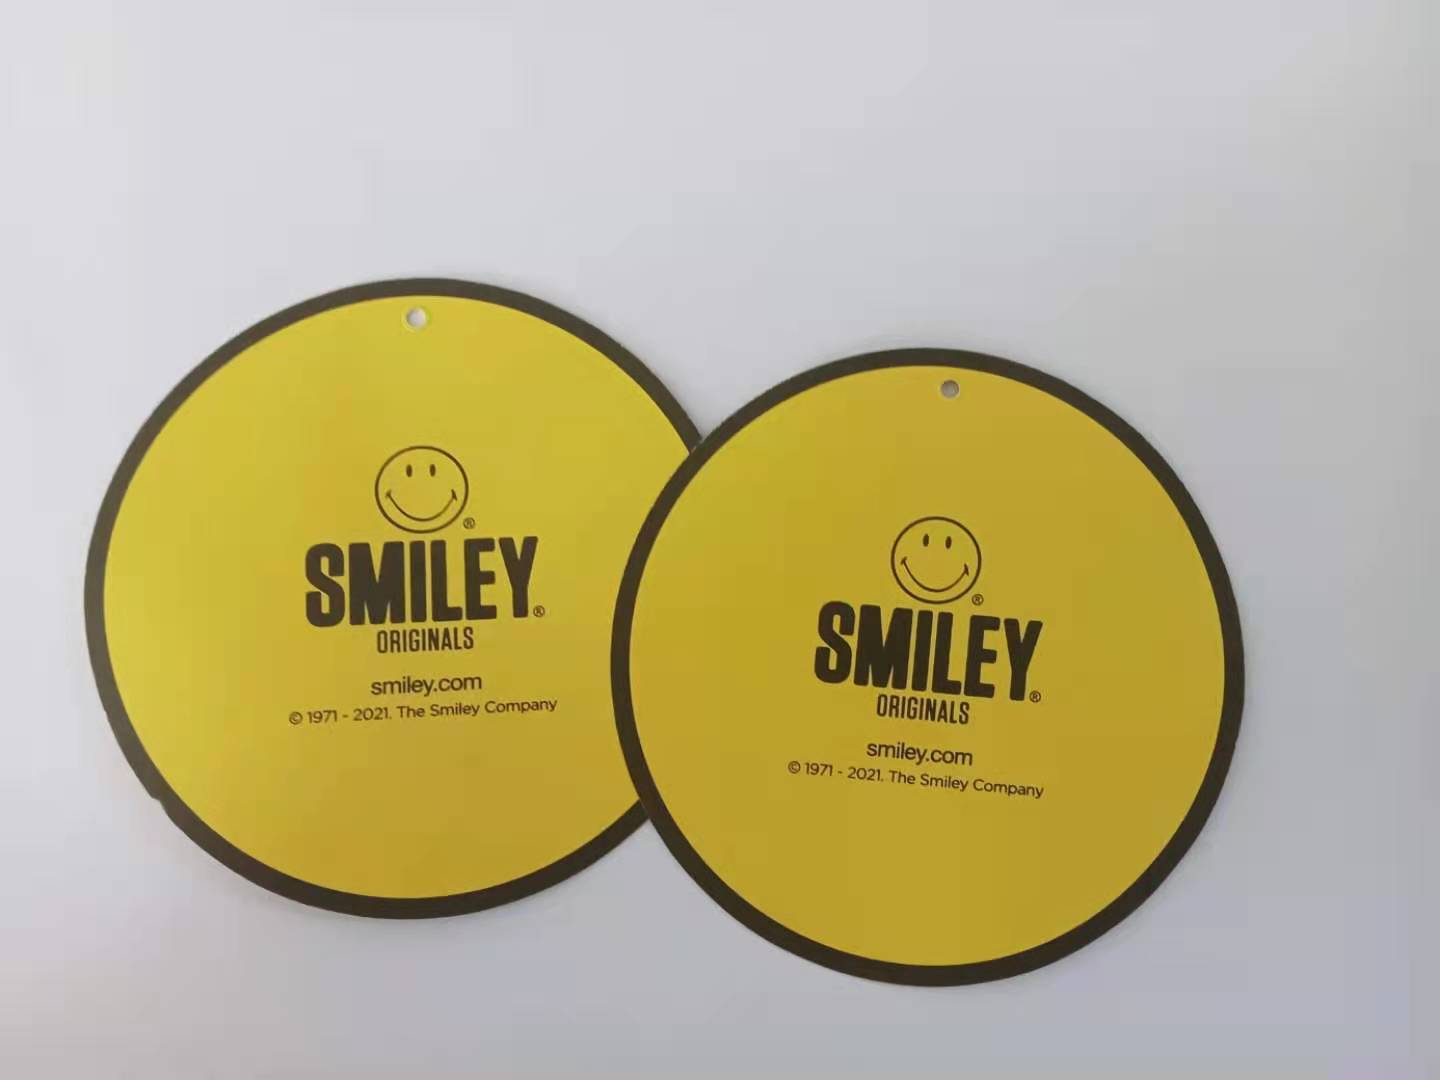 厂家直销黄色笑脸圆形吊牌 可用作多种商品包装辅料 特种纸吊牌 现货4